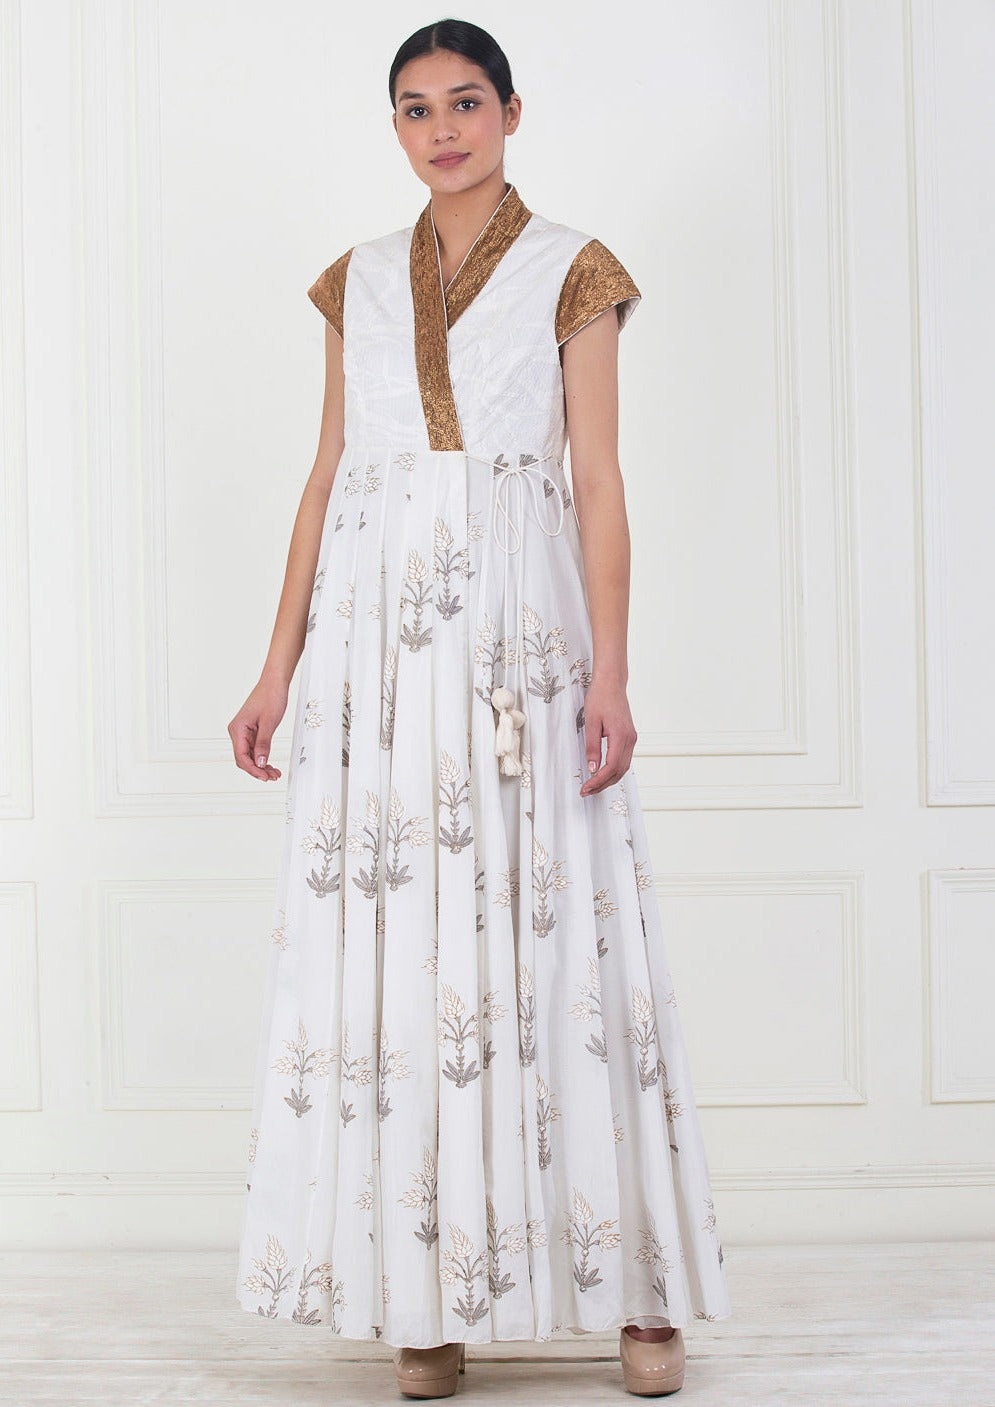 A white cotton anarkali dress